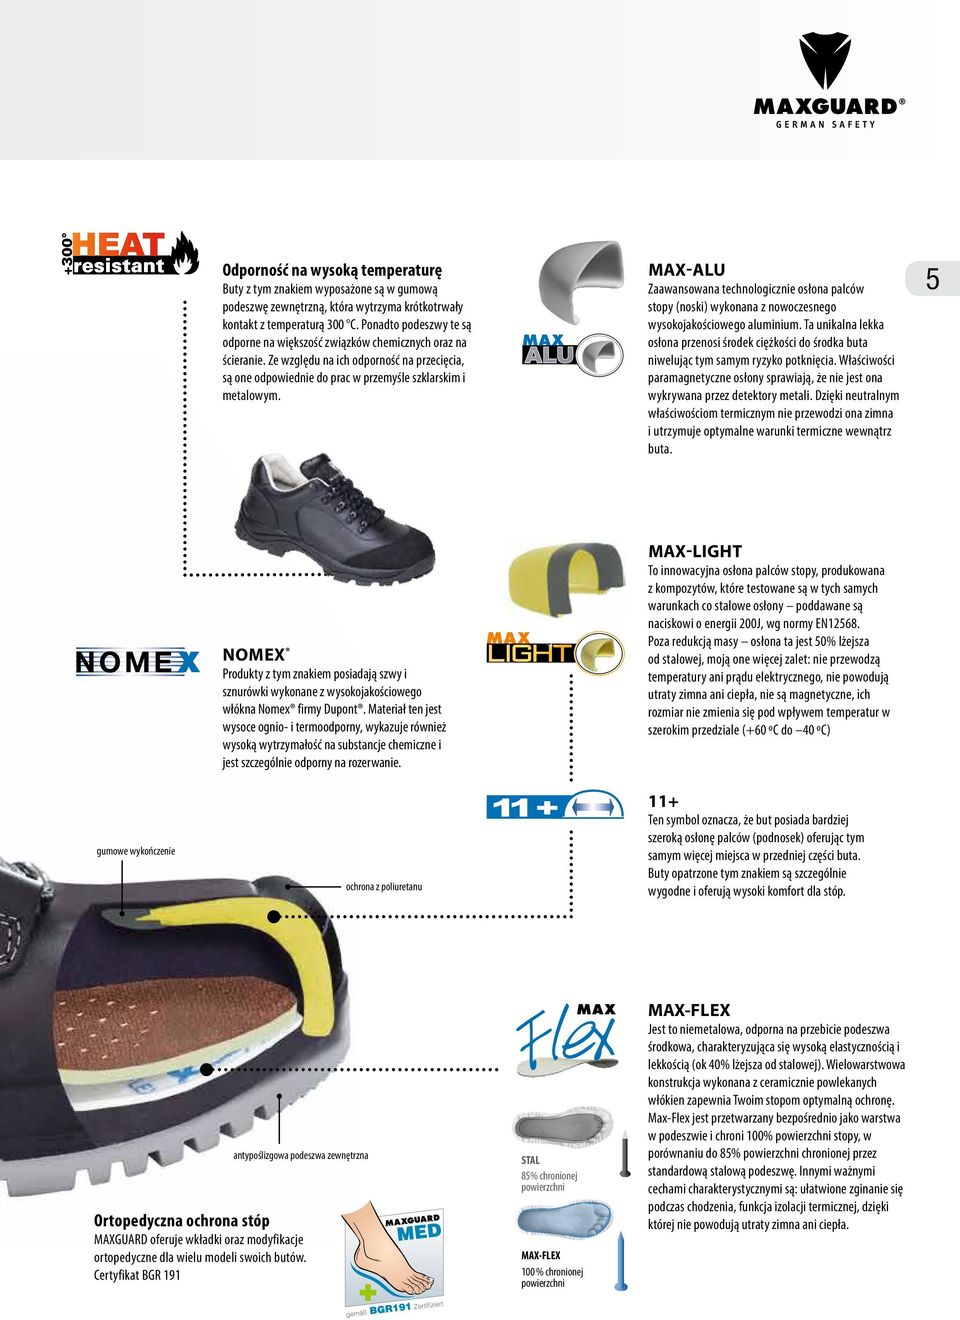 Max-Alu Zaawansowana technologicznie osłona palców stopy (noski) wykonana z nowoczesnego wysokojakościowego aluminium.